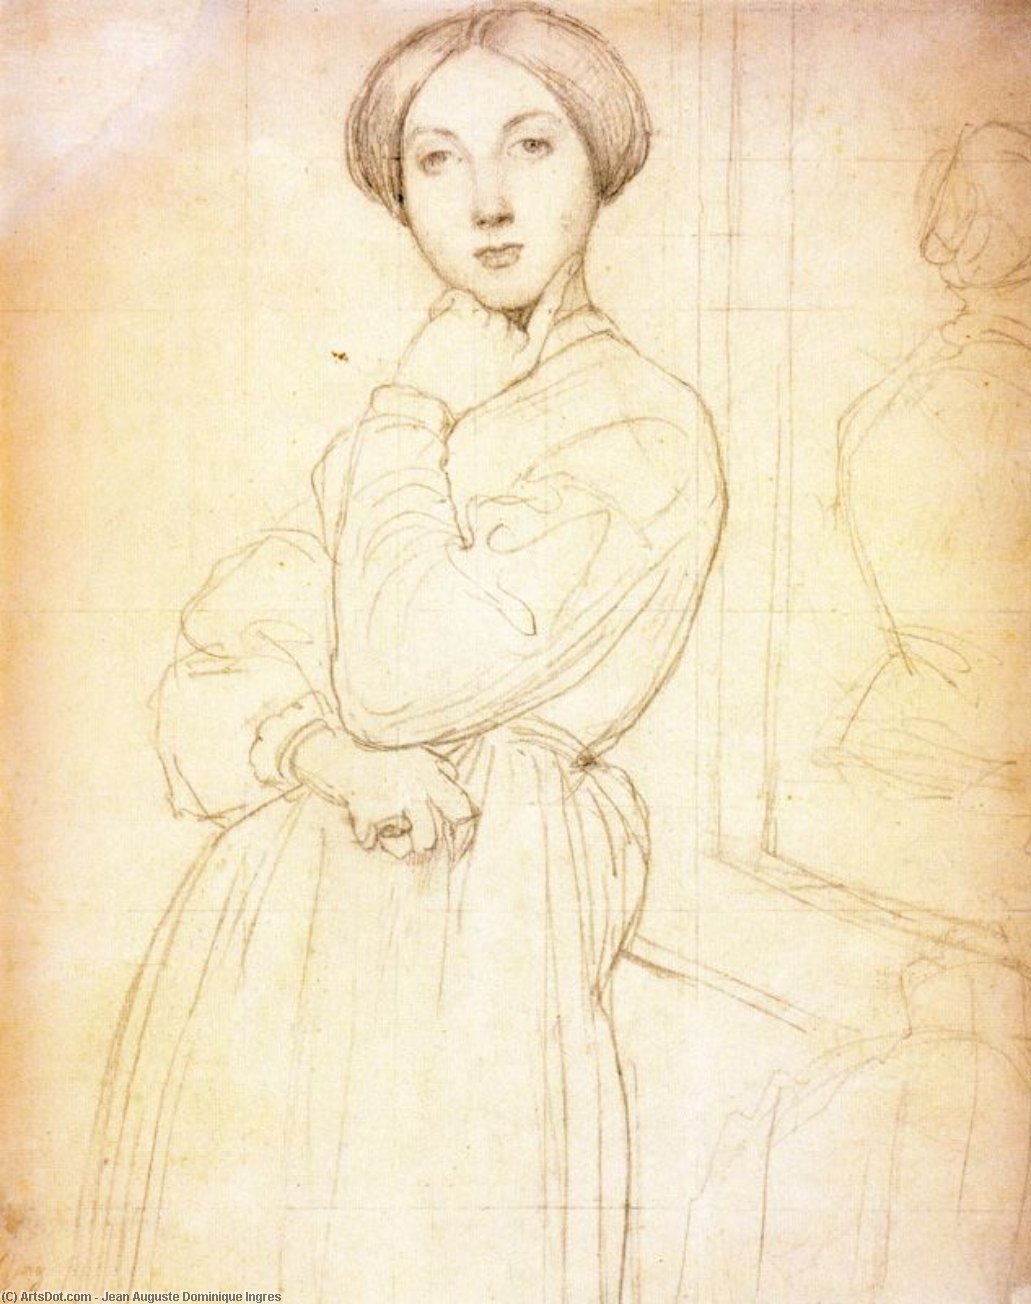 Энгр портрет дочери Люсьена Бонапарта